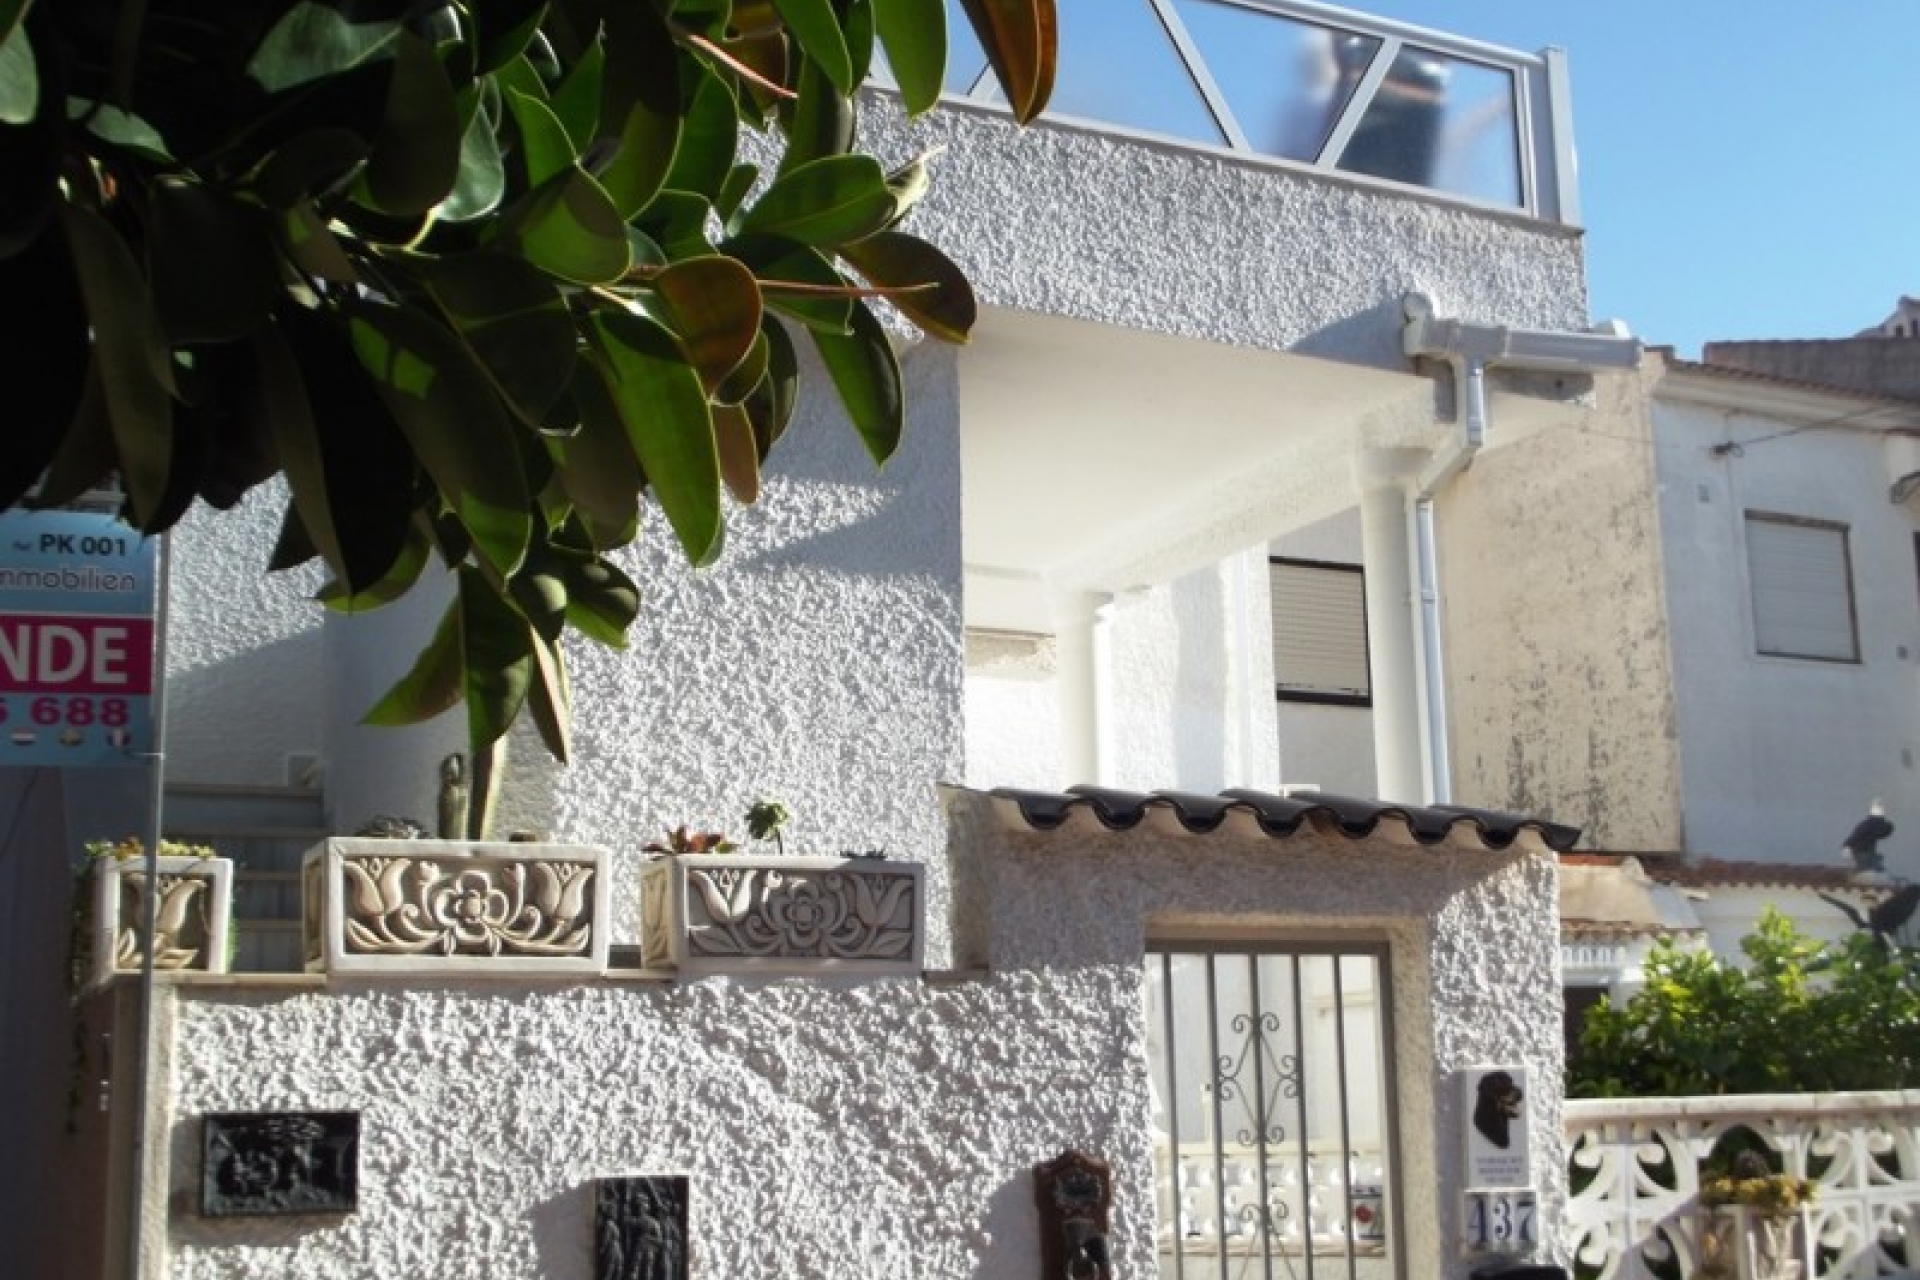 La Siesta cheap bargain Property for sale Costa Blanca